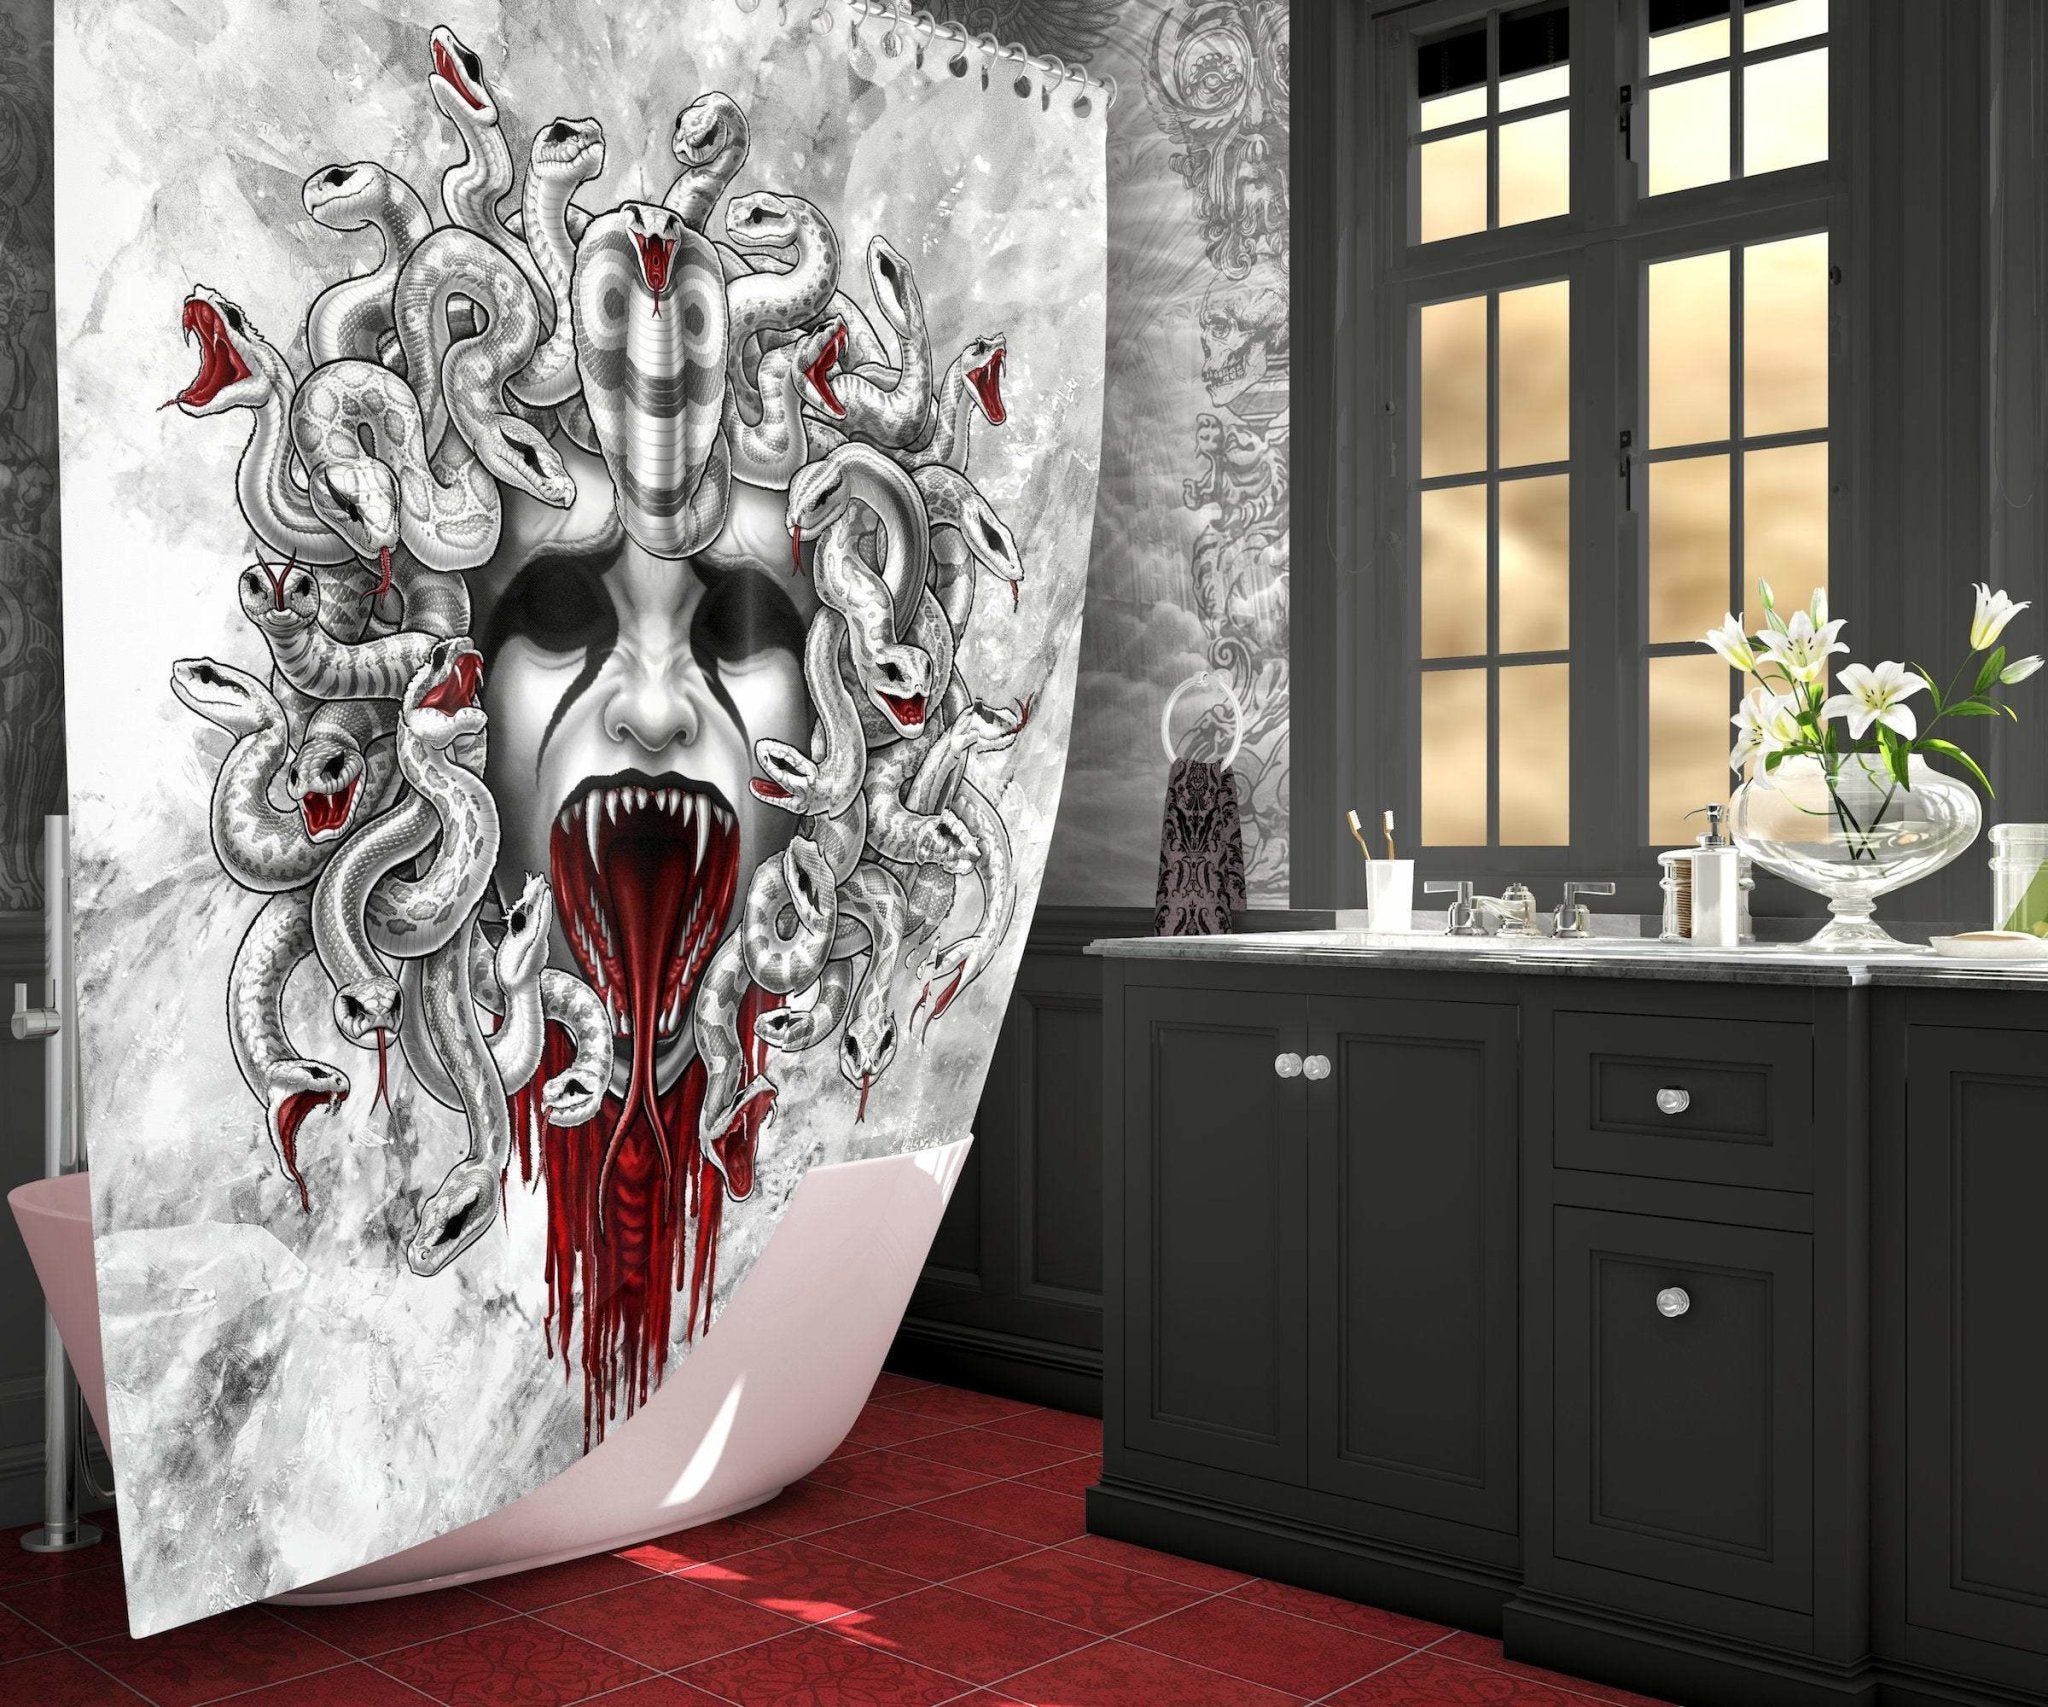 White Goth Shower Curtain, Halloween, Gothic Bathroom Decor - Screaming Medusa & Skull, White Snakes - Abysm Internal